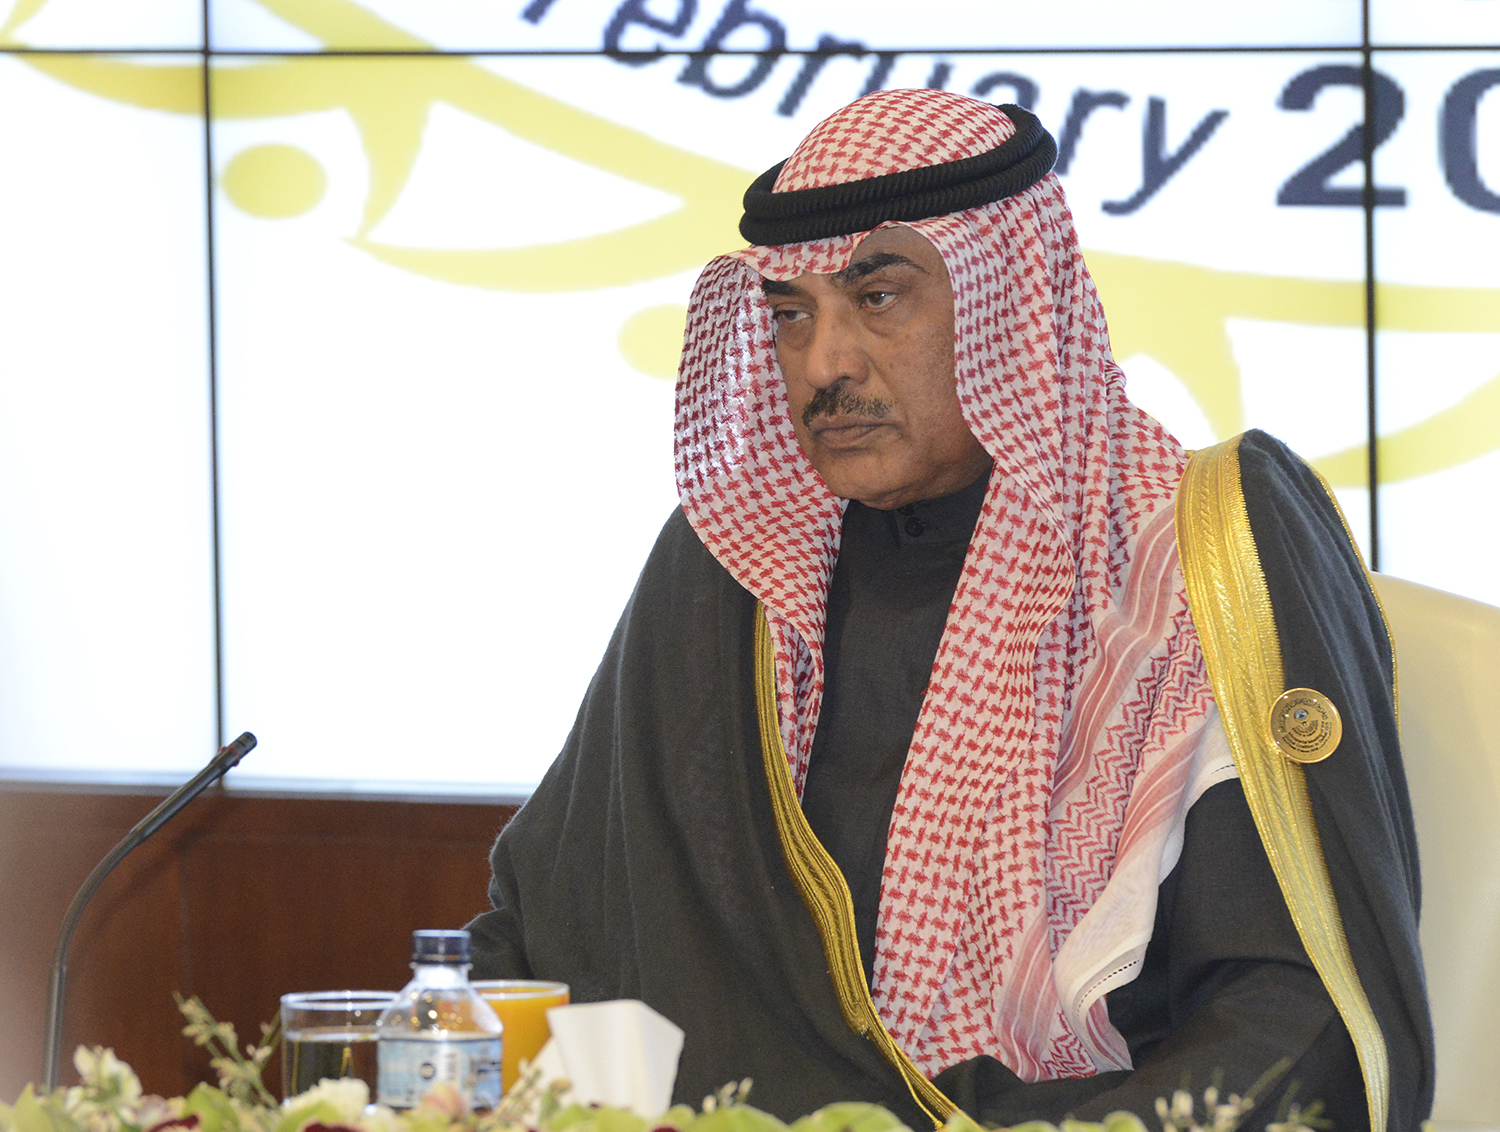 Deputy Premier and Foreign Minister Sheikh Sabah Khaled Al-Hamad Al-Sabah